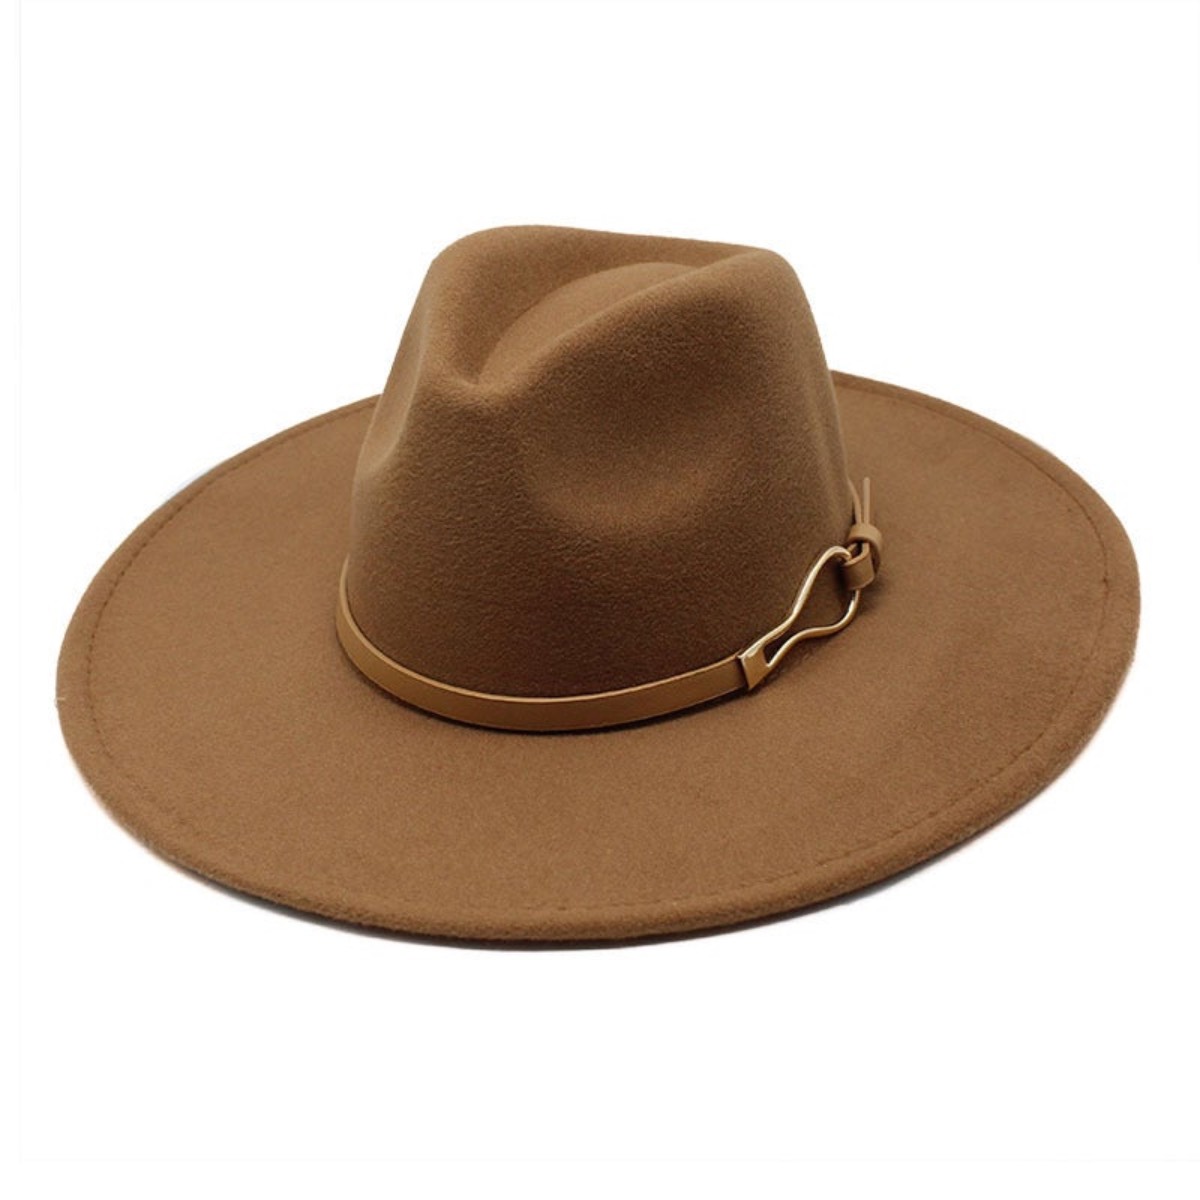 Sombrero fedora Hat and Style